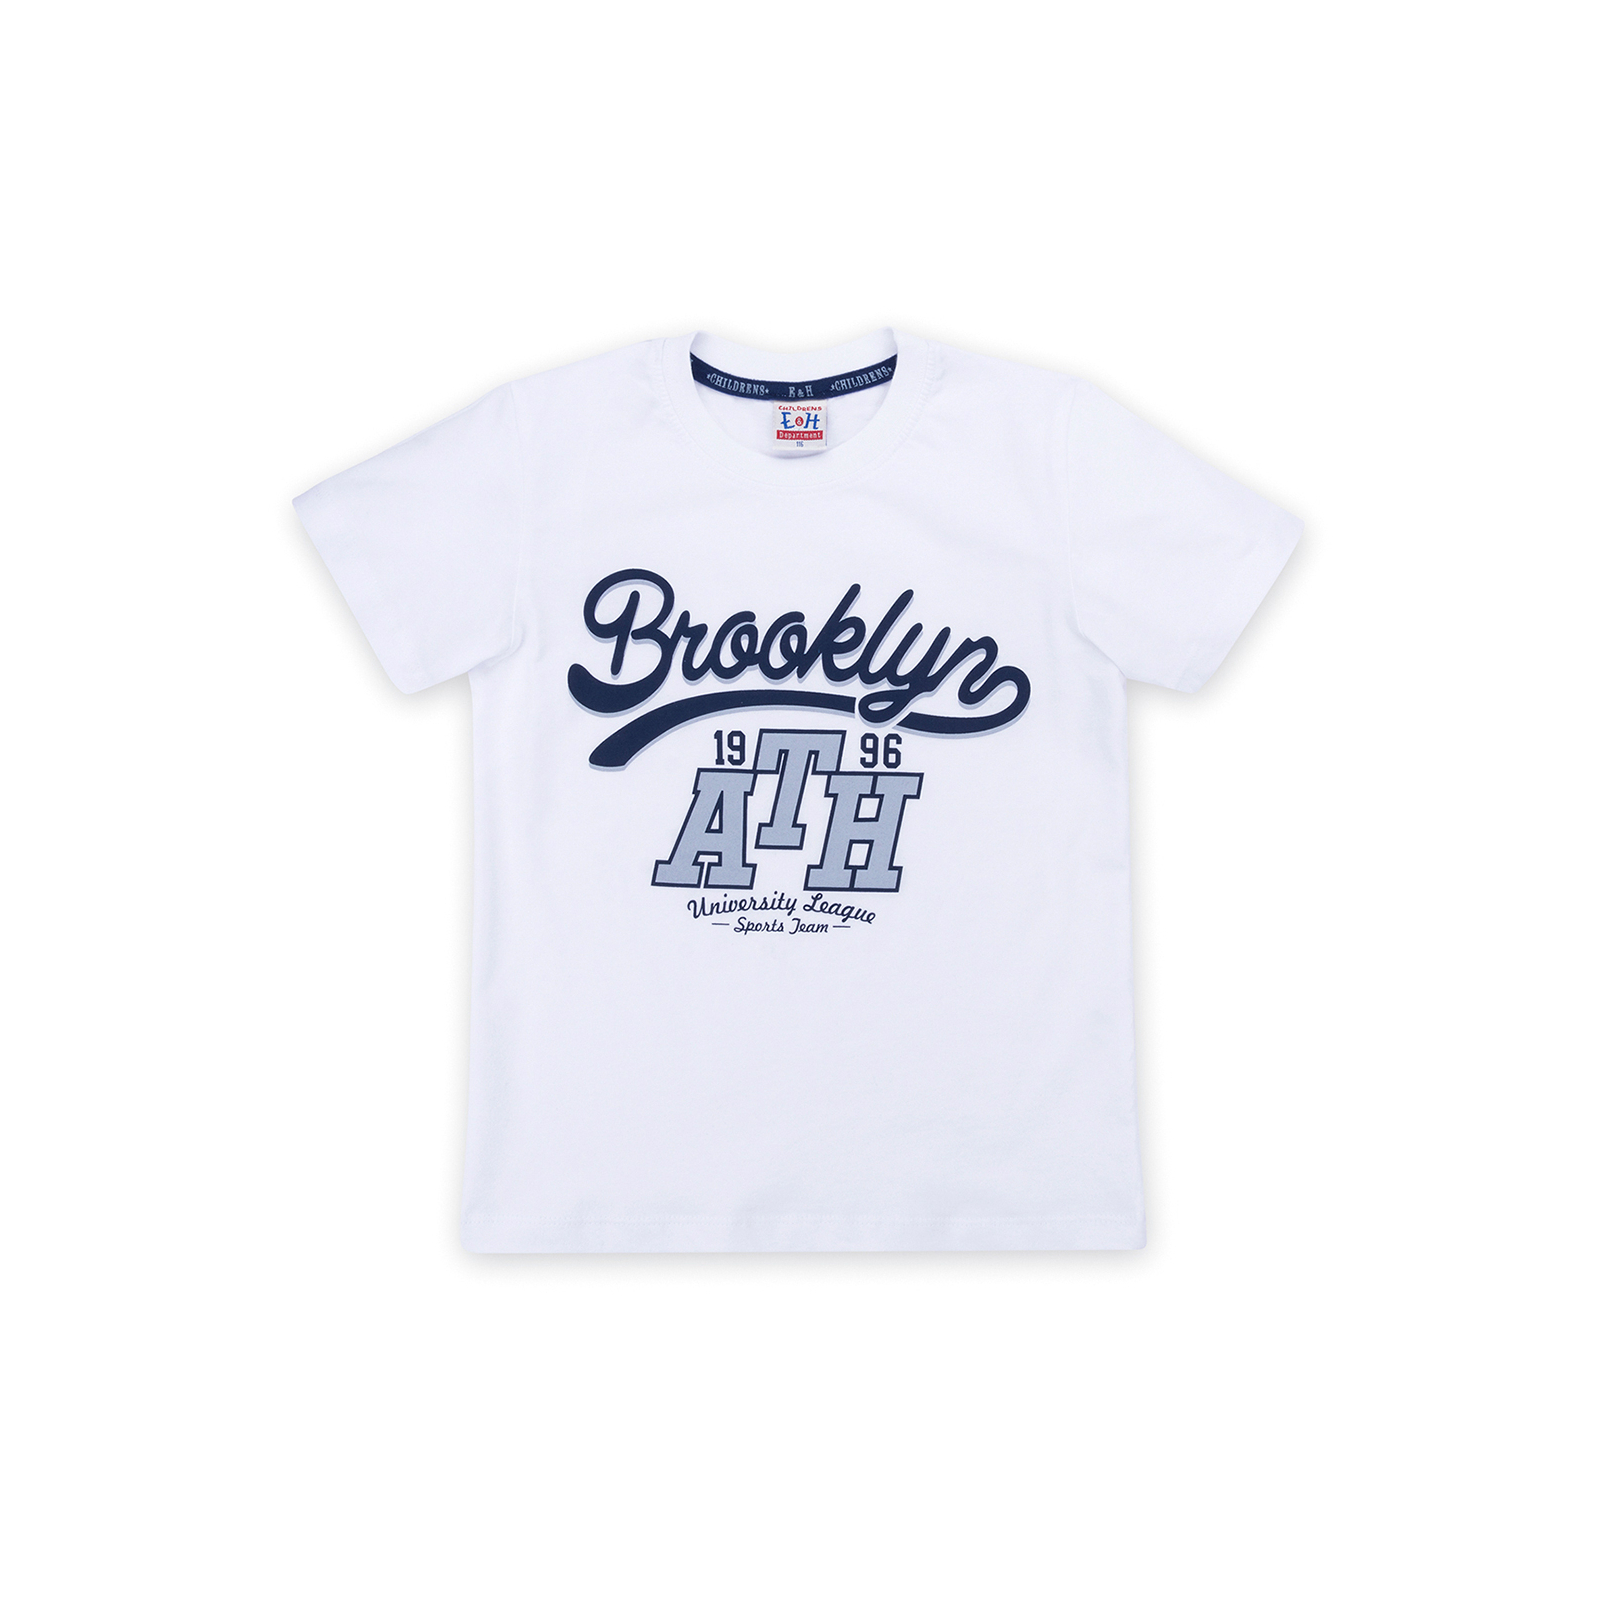 Набор детской одежды Breeze футболка "Brooklyn ATH" с шортами (8932-128B-white) изображение 2